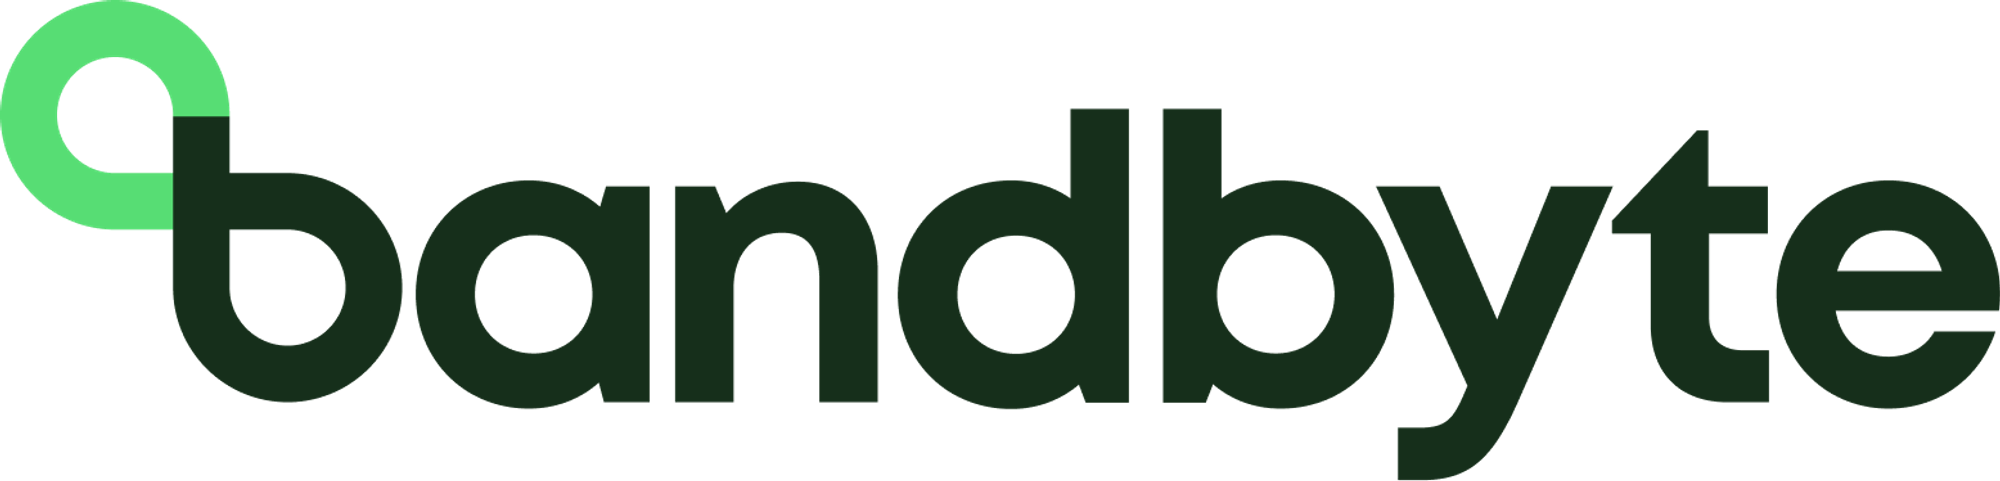 Modern logo design for bandbyte.com